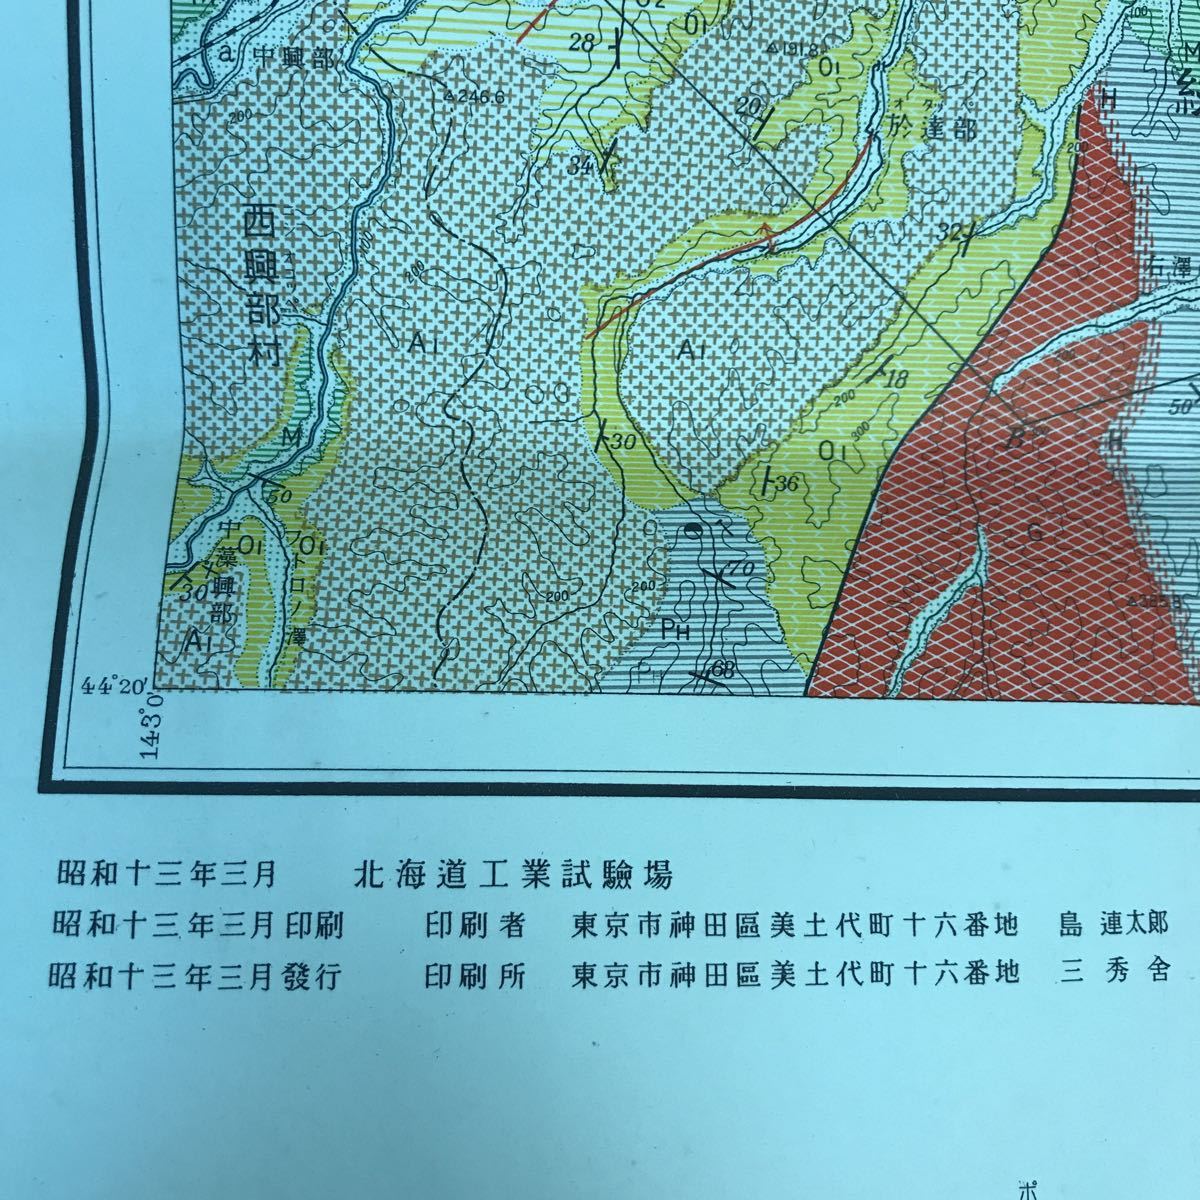 A63-029 北海道工業試験場 地質調査報告 第ニ號 興部図幅説明書 昭和十三年五月_画像7